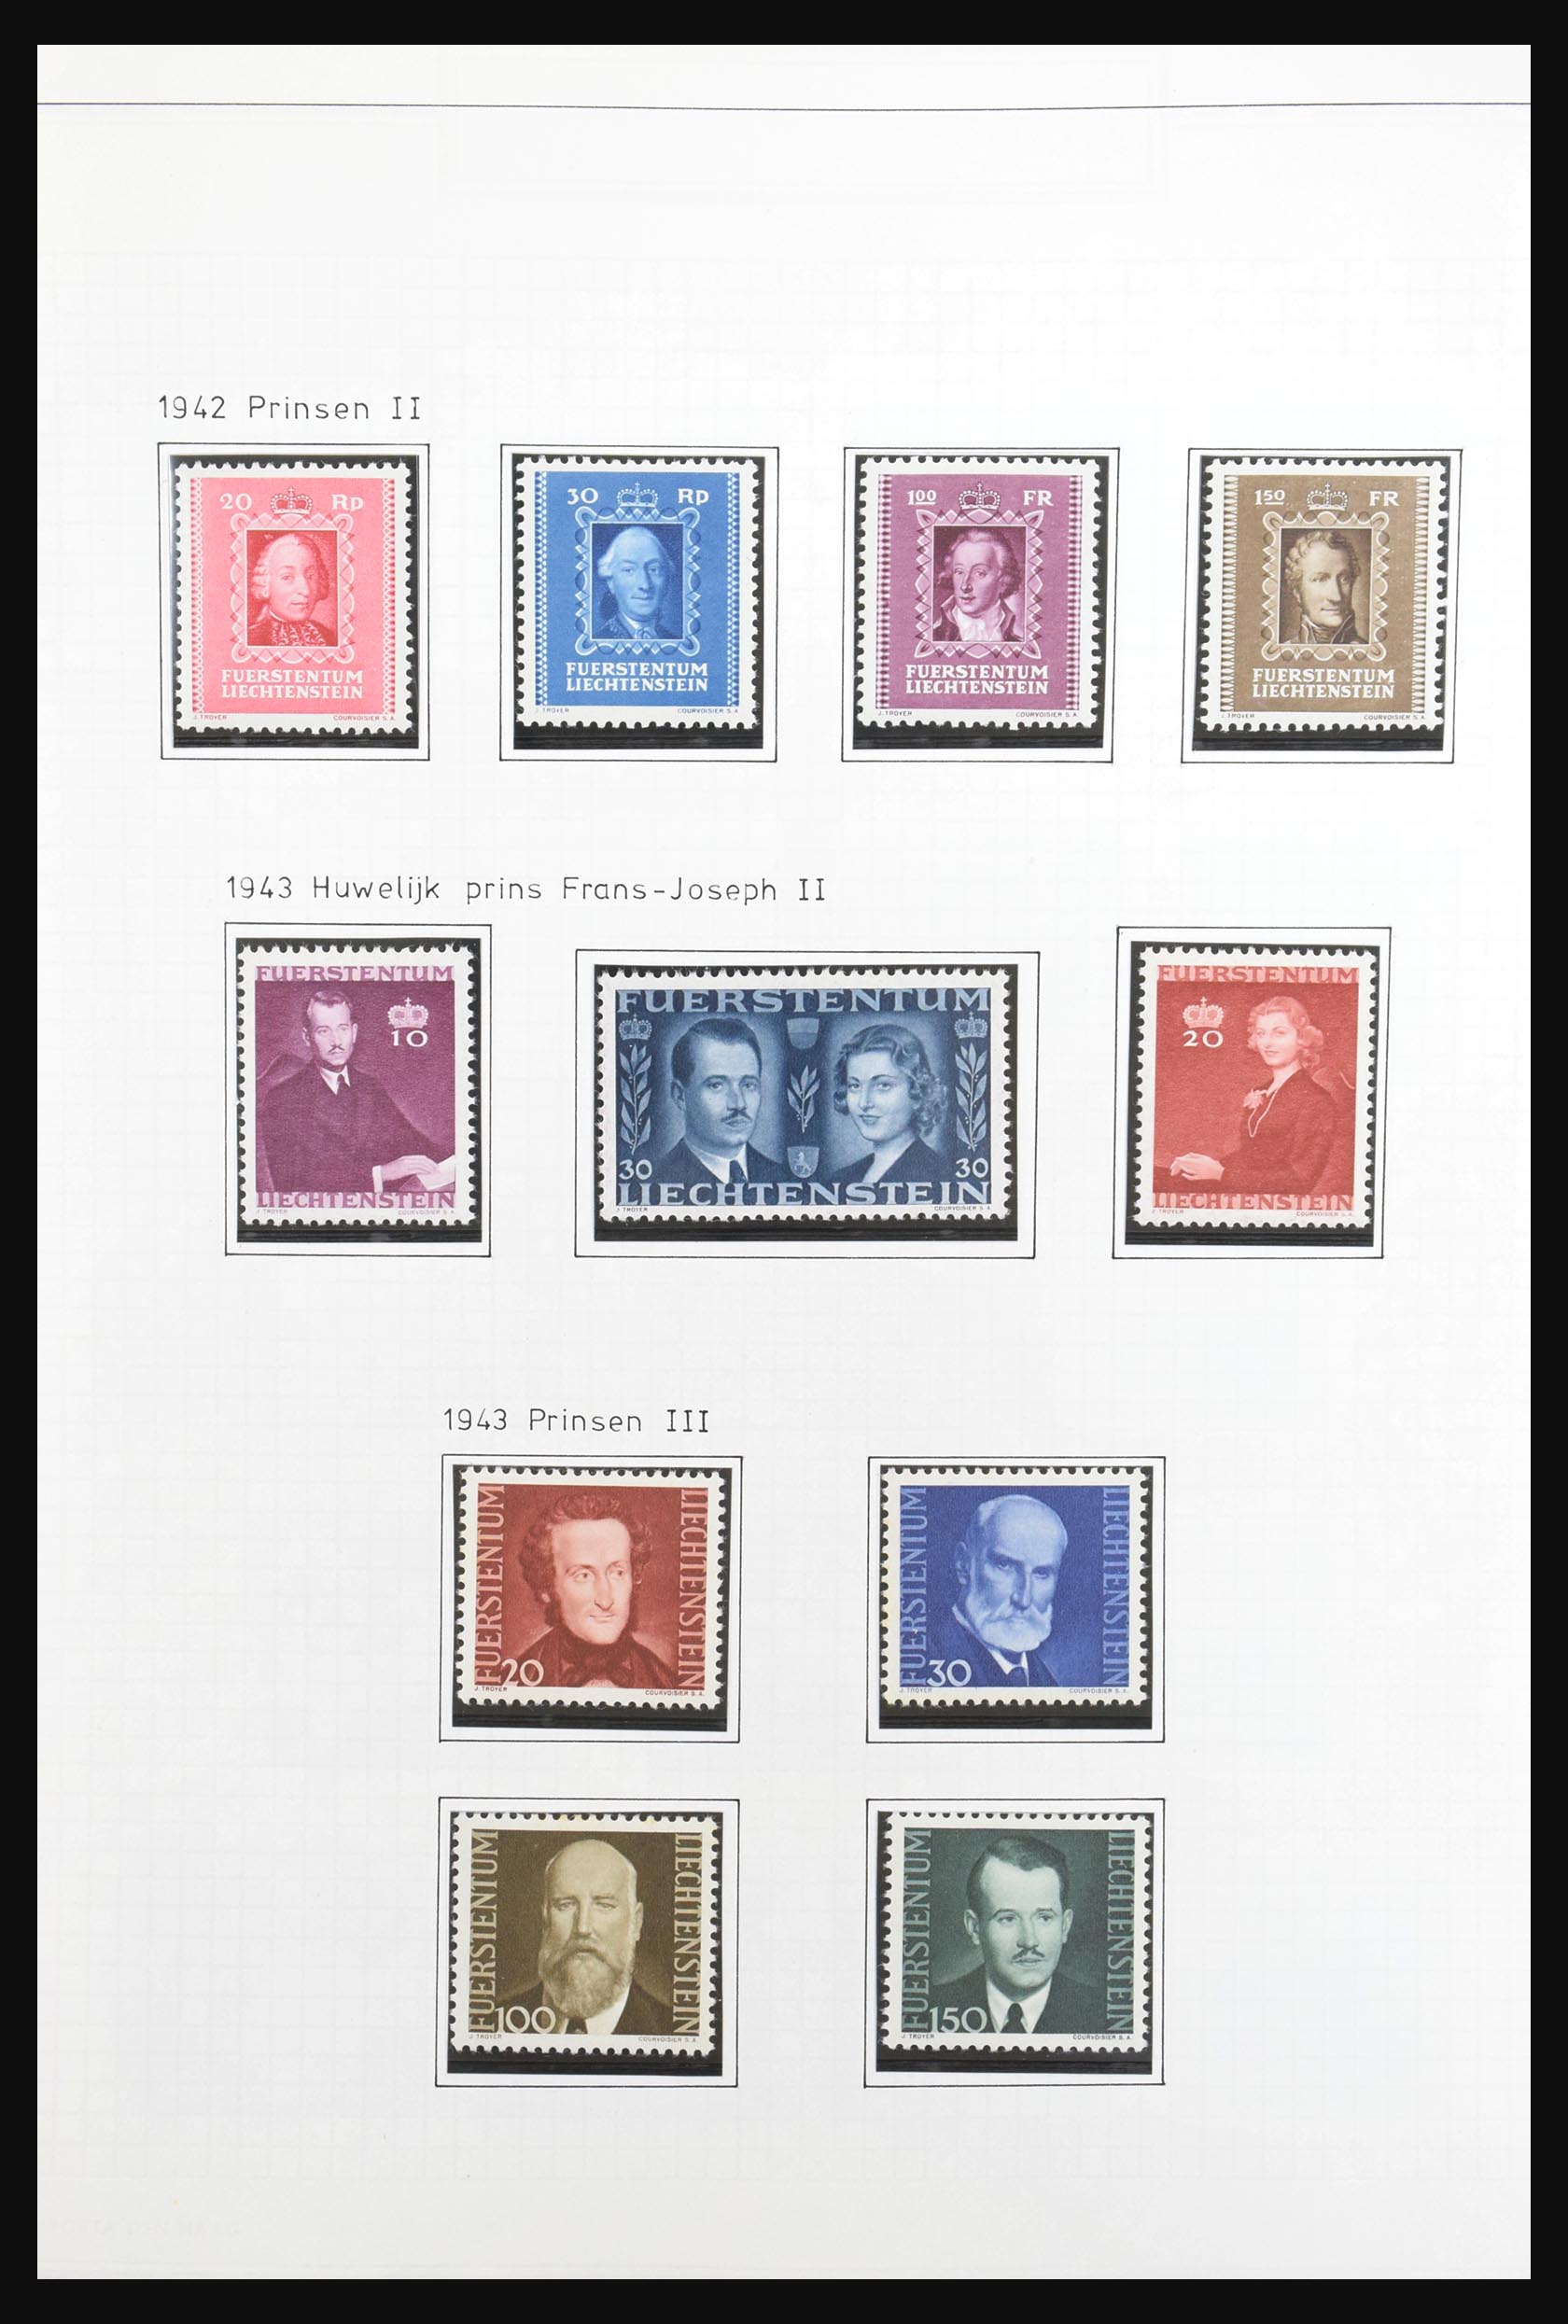 31131 018 - 31131 Liechtenstein 1912-2013.